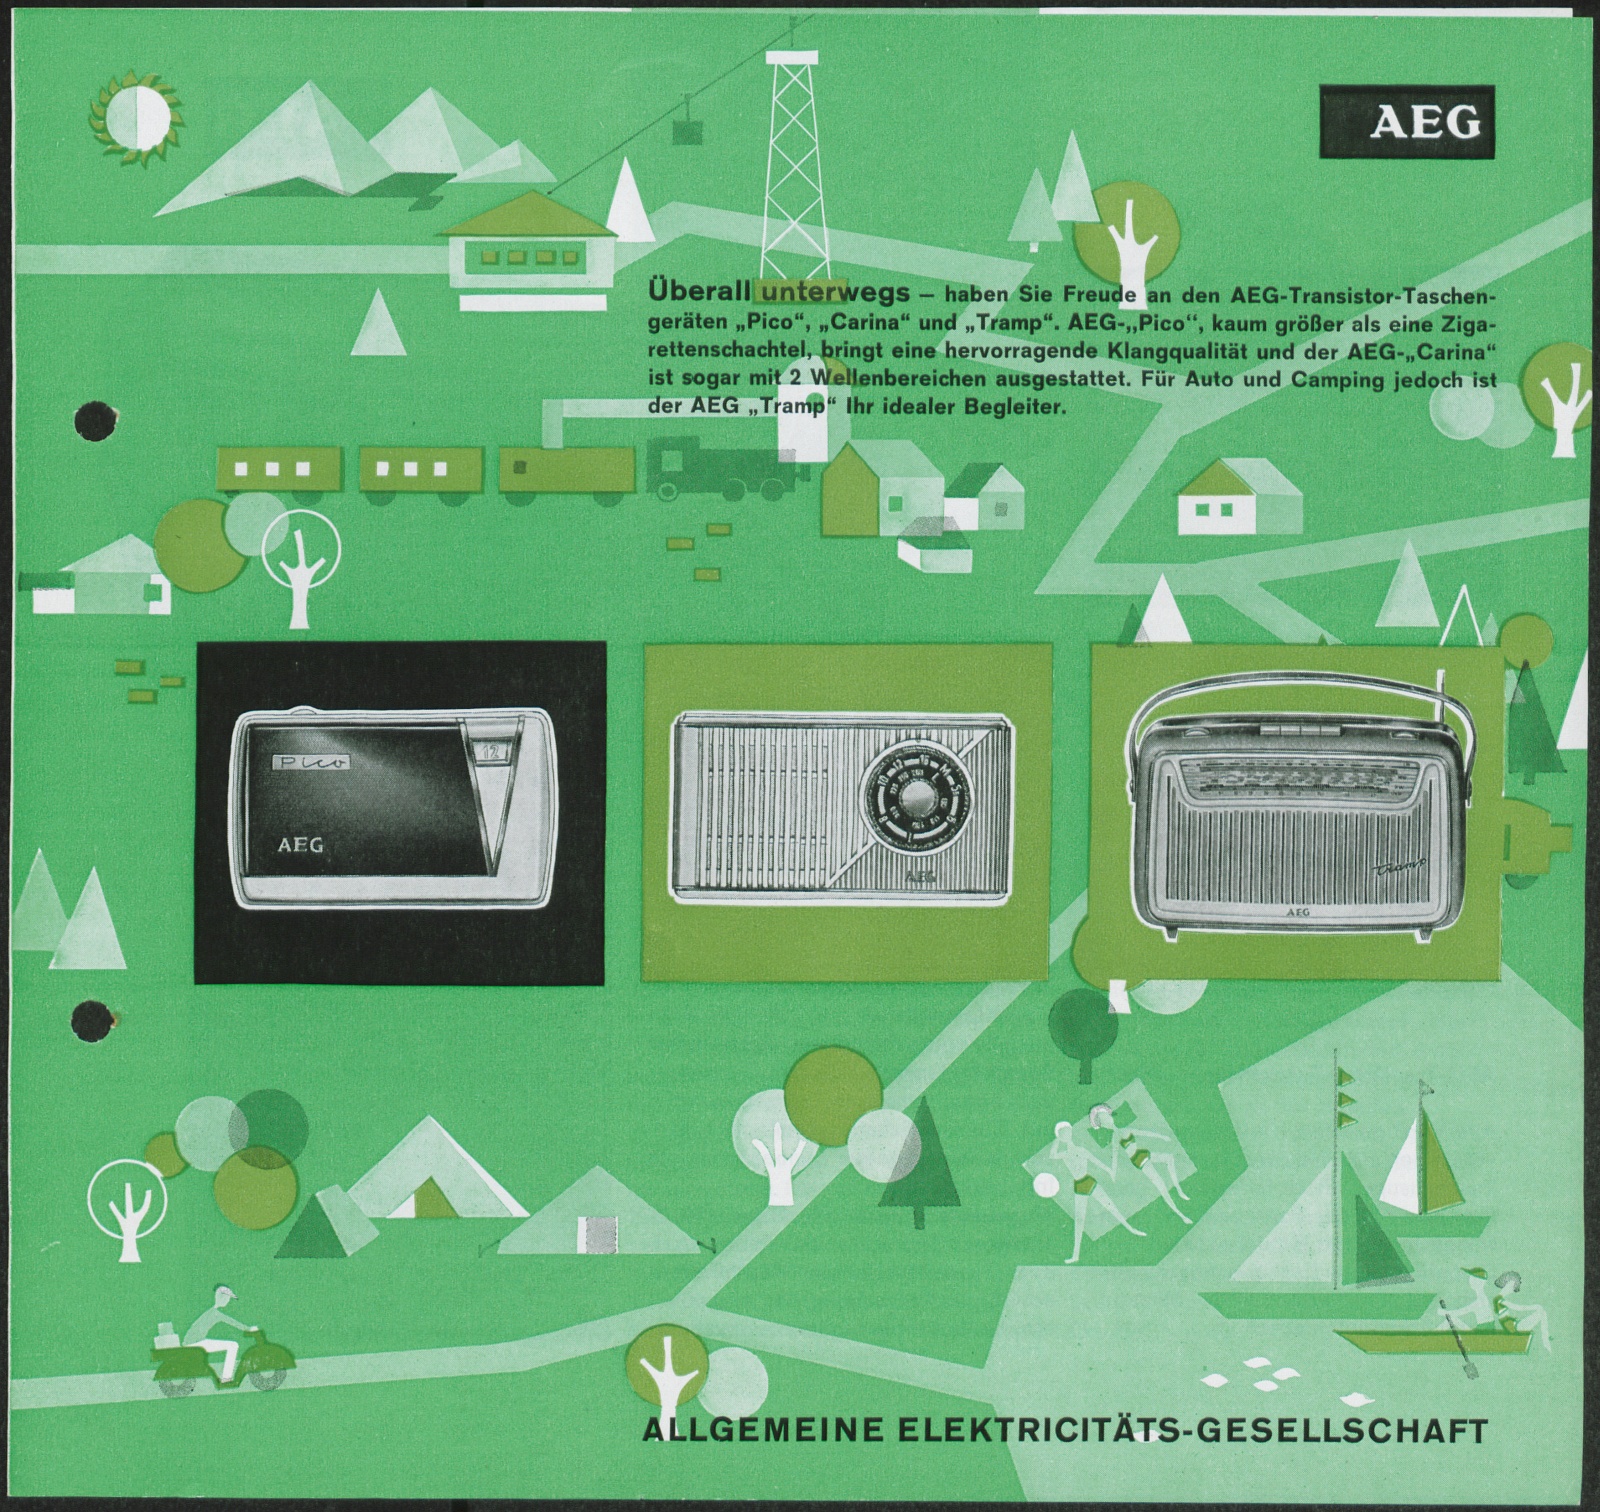 Werbeprospekt: Werbeprospekt für die AEG-Transistor-Taschengeräte AEG Pico, AEG Carina und AEG Tramp (Stiftung Deutsches Technikmuseum Berlin CC0)